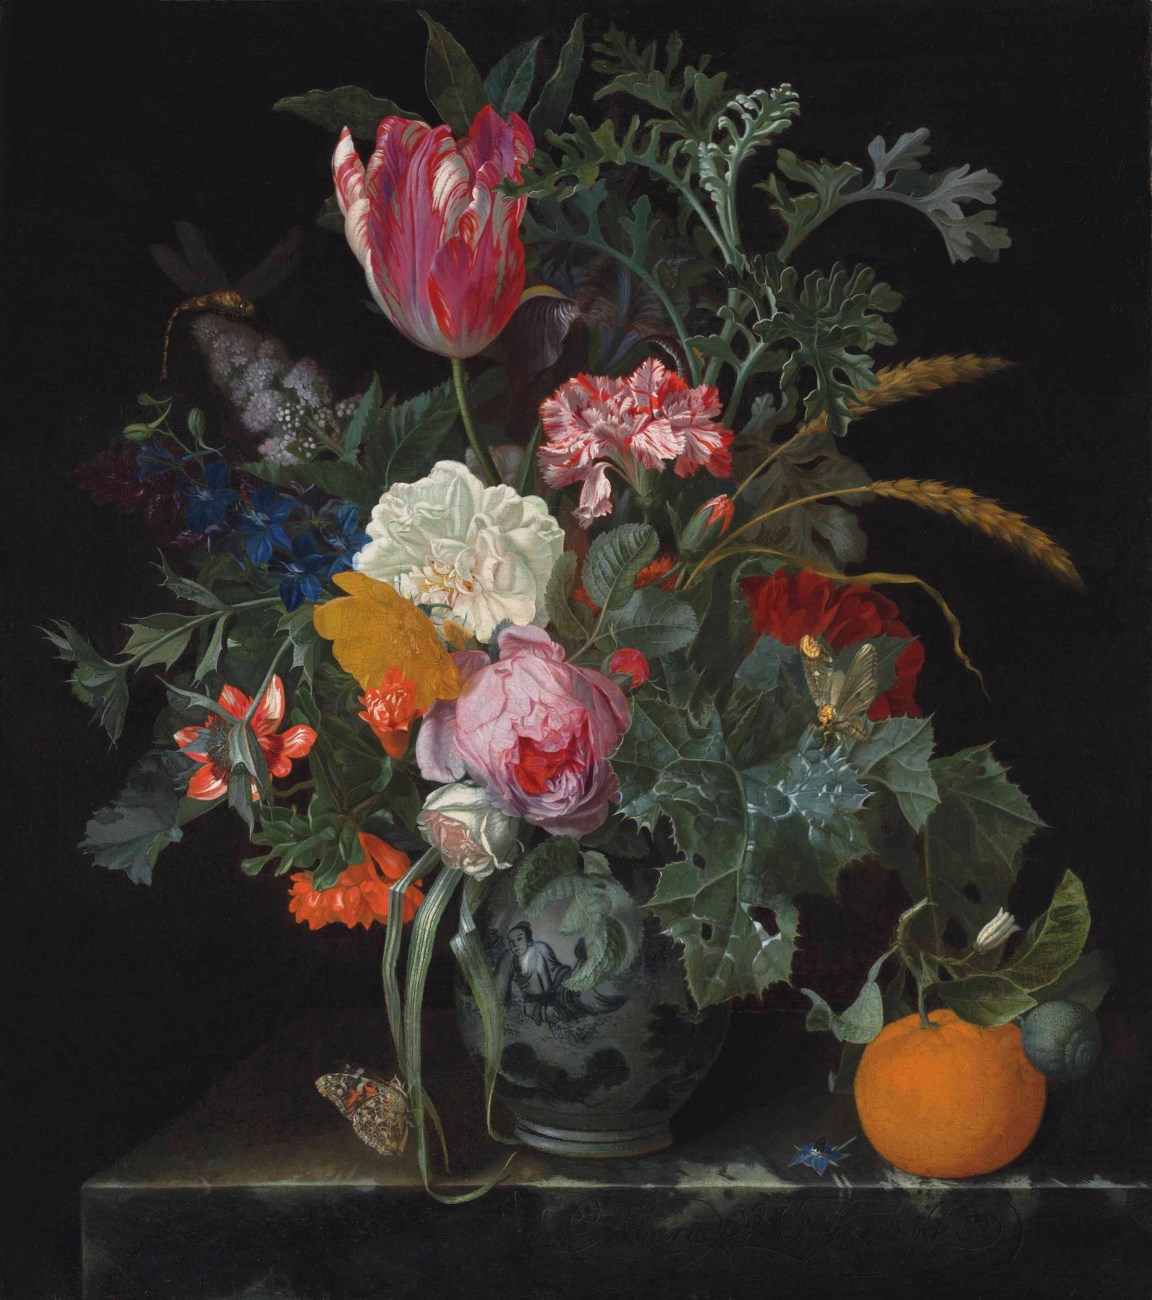 Bouquet de fleurs by Maria van Oosterwijck - Seconde moitié du XVIIe siècle - 56.5 x 50.1 cm collection privée